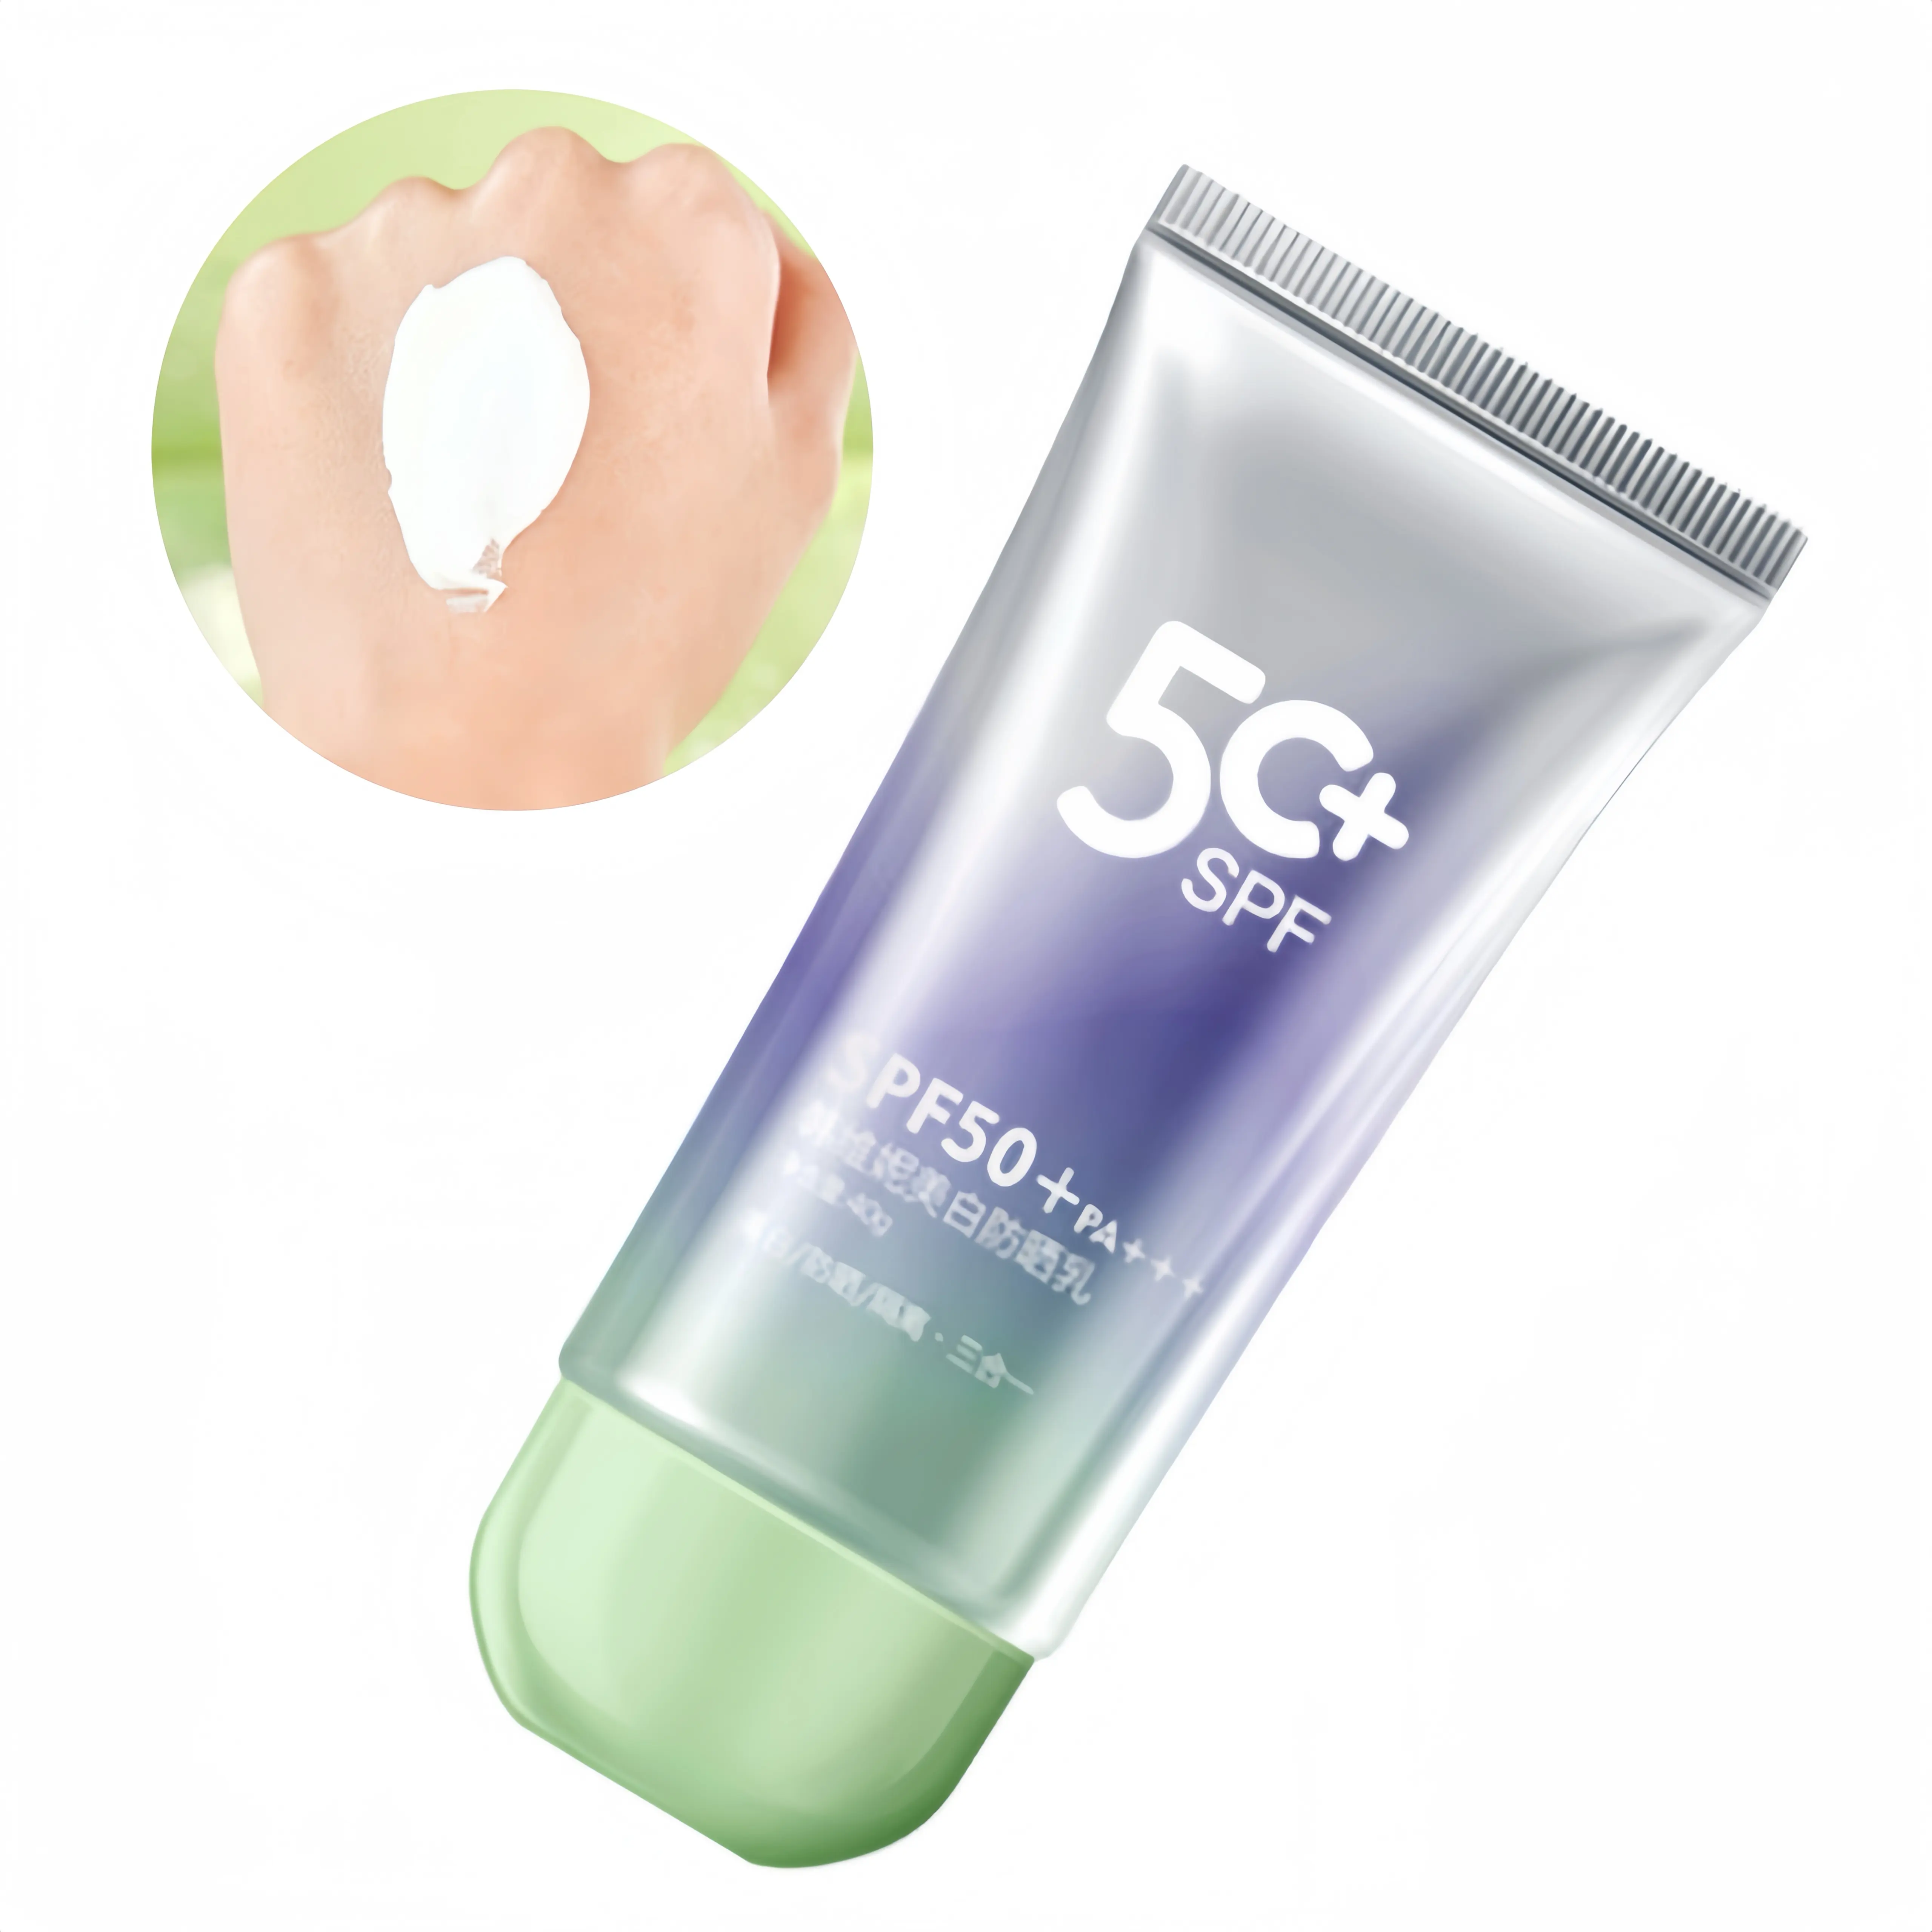 OEM Private Label crema solare spf 50 sbiancante, idratante e protezione solare uva & uvb crema di protezione solare per la cura del viso